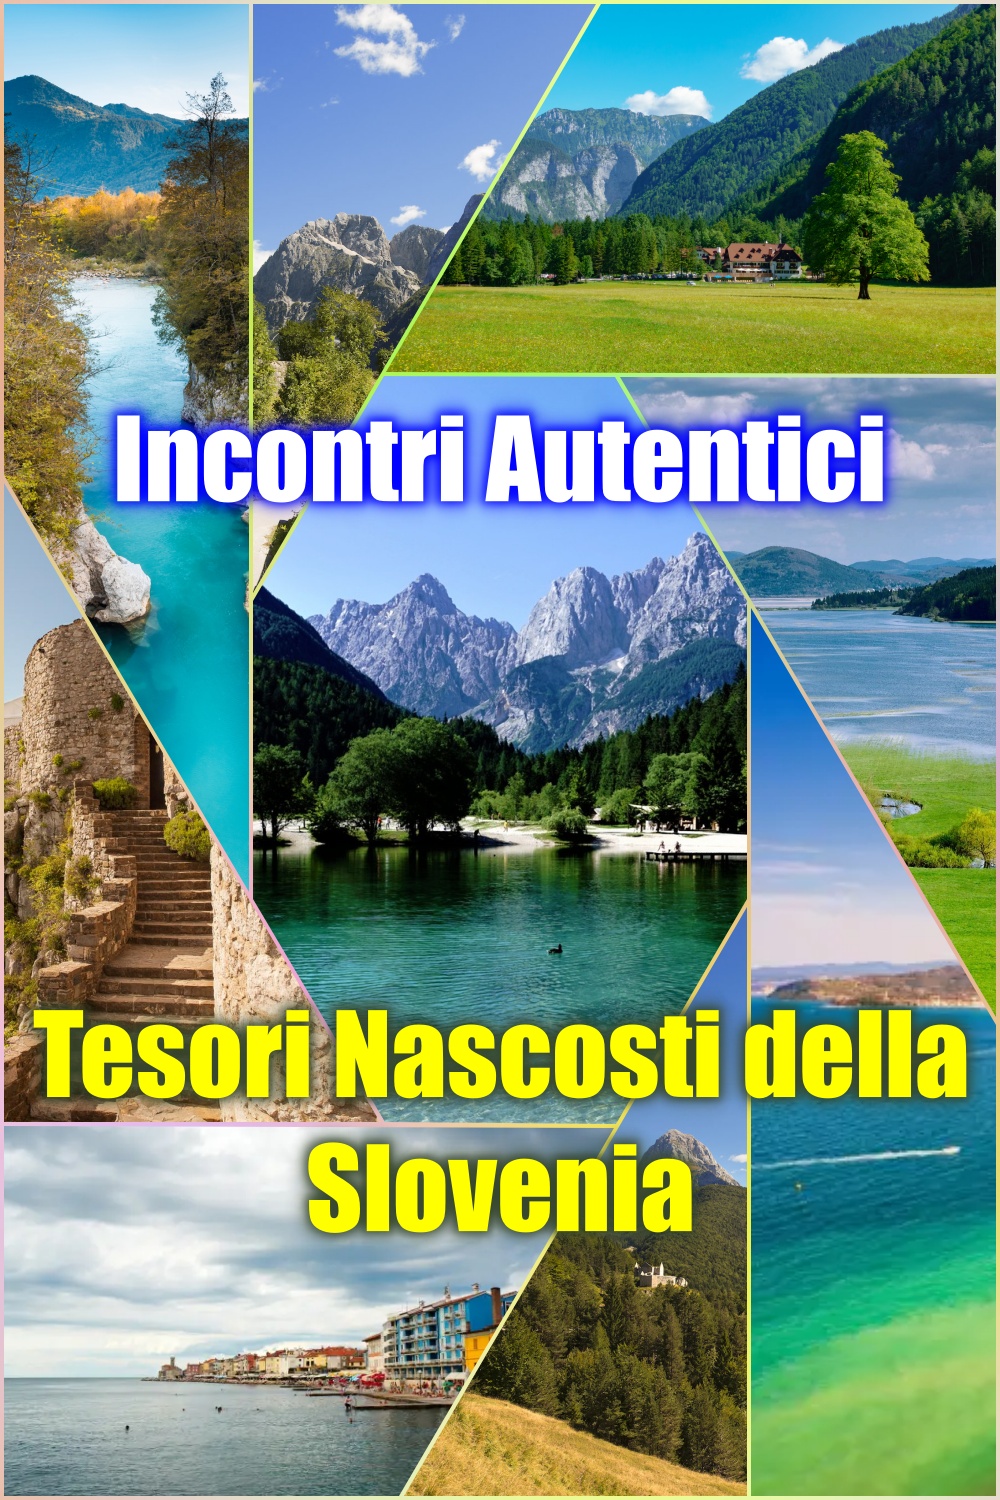 Tesori Nascosti della Slovenia